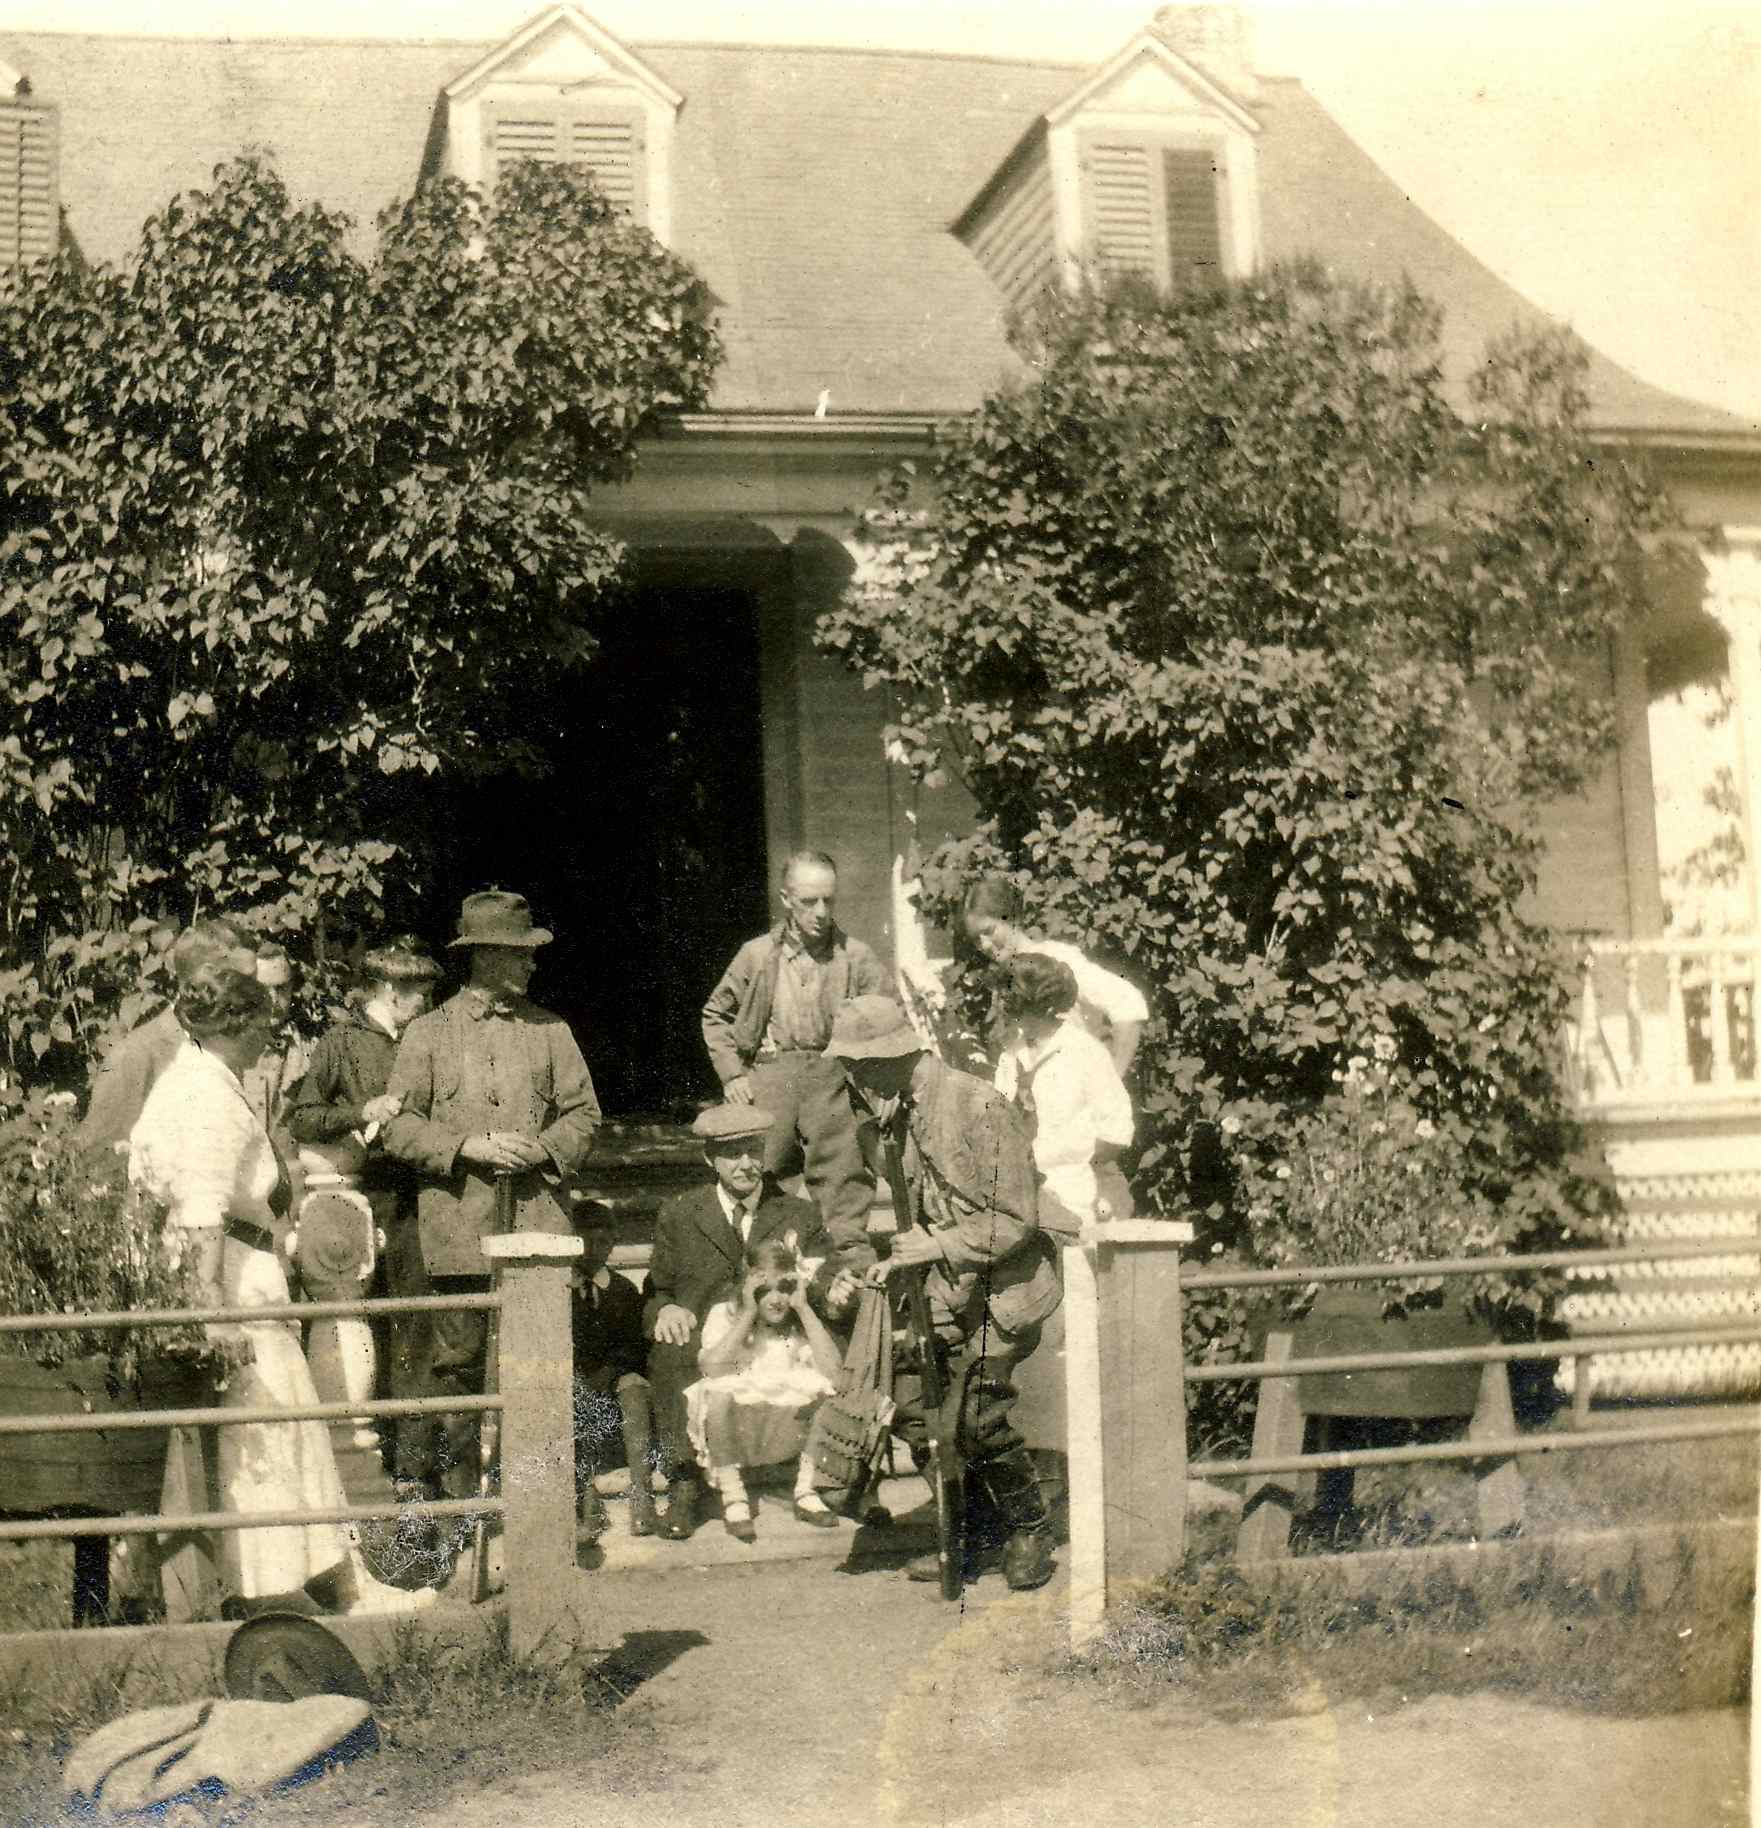 Deux chasseurs sont entourés de quelques personnes devant une maison rurale bordée de lilas.